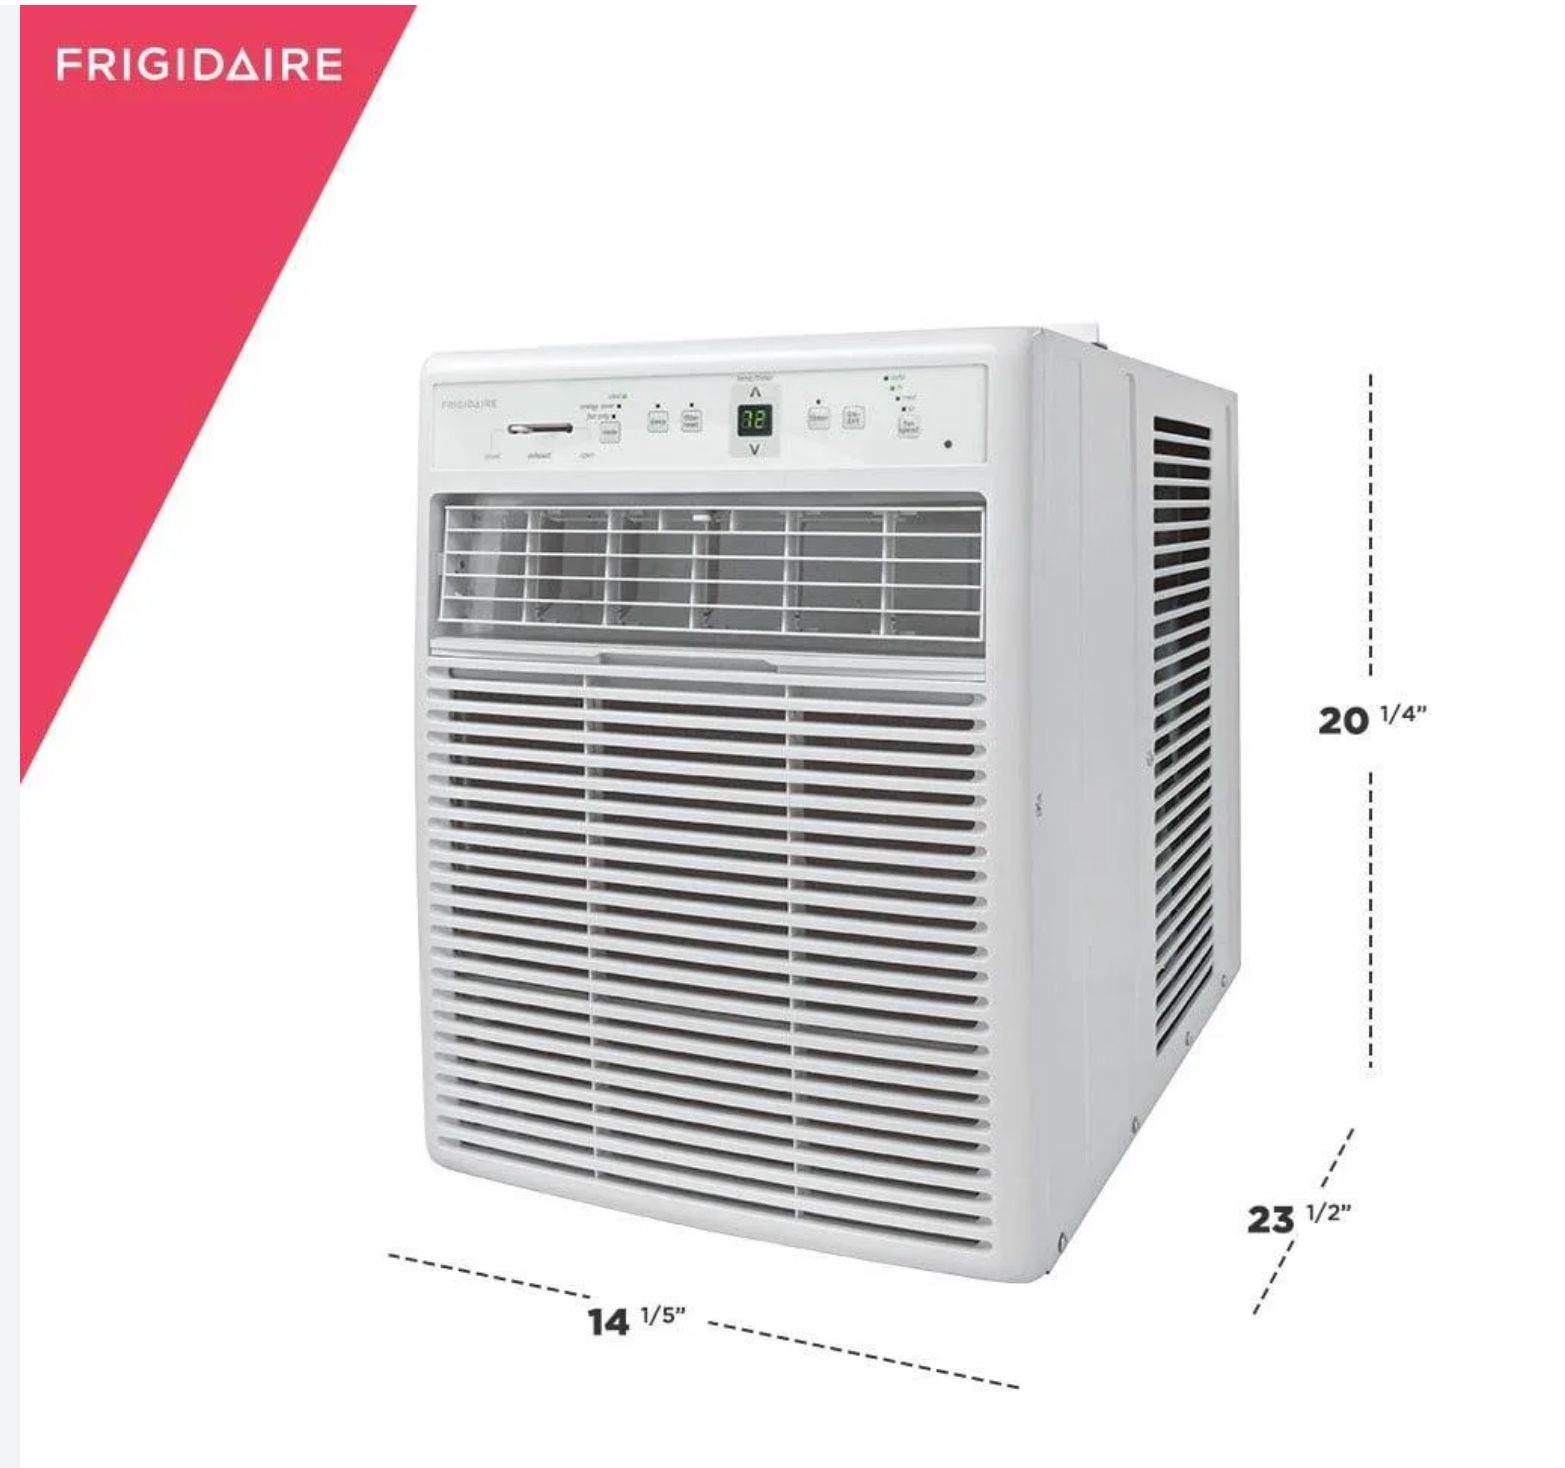 frigidaire ffrs1022re 10000 btu window air conditioner - white